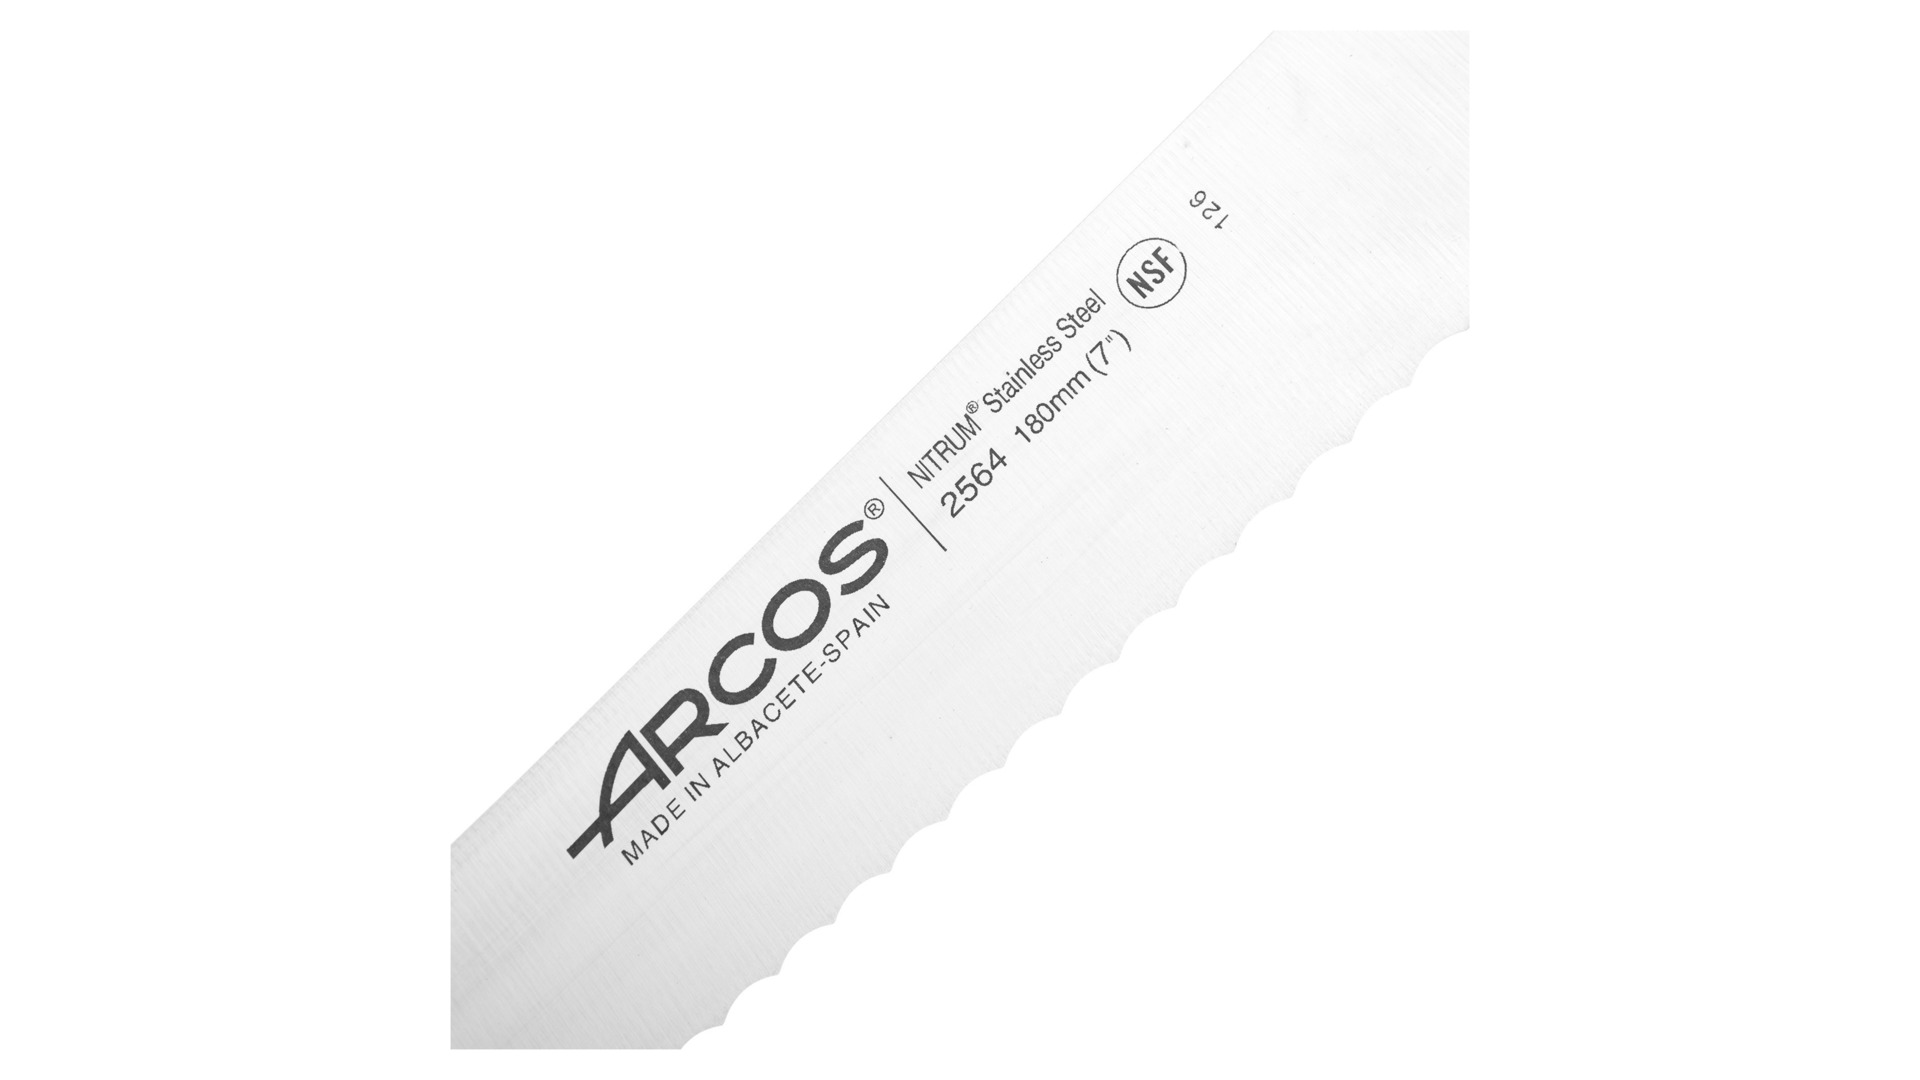 Нож для хлеба Arcos Clasica 18см, сталь кованая